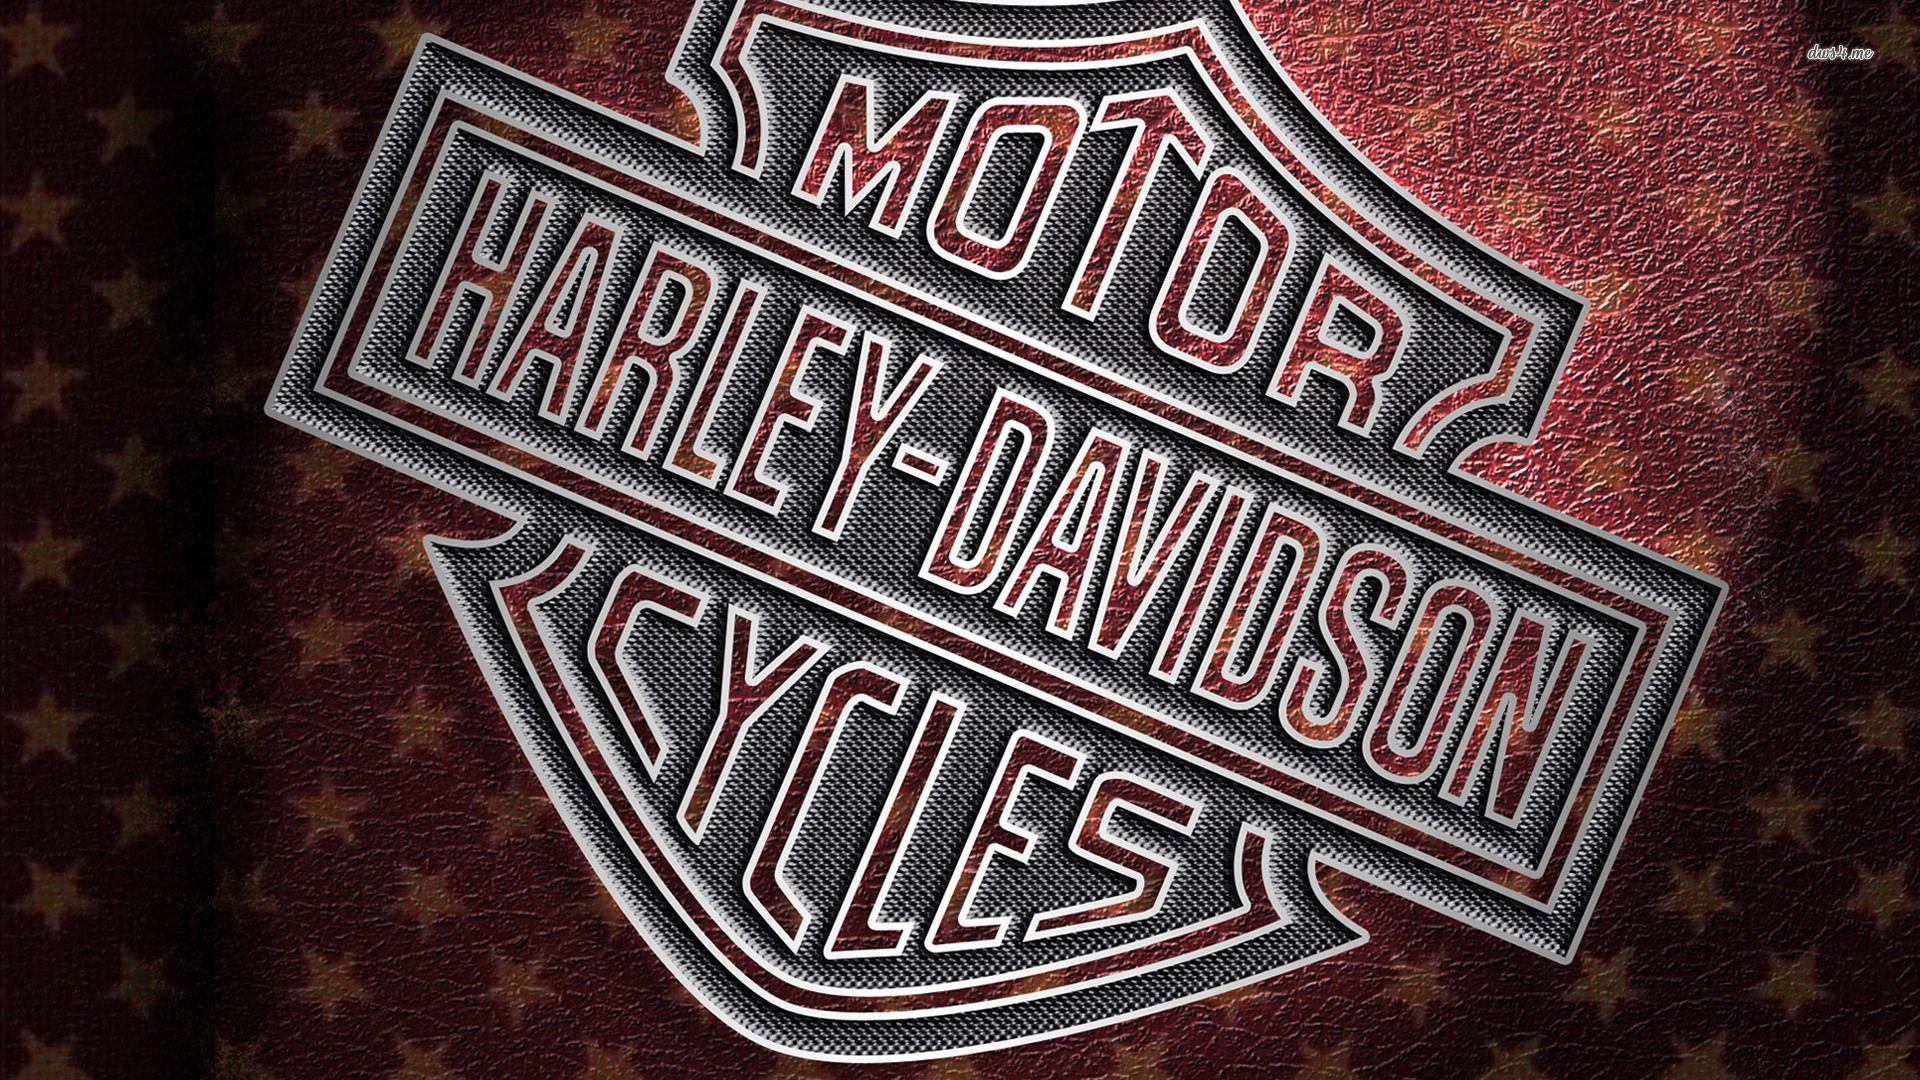 harley davidson logo 1920x1080 motorcycle wallpaper